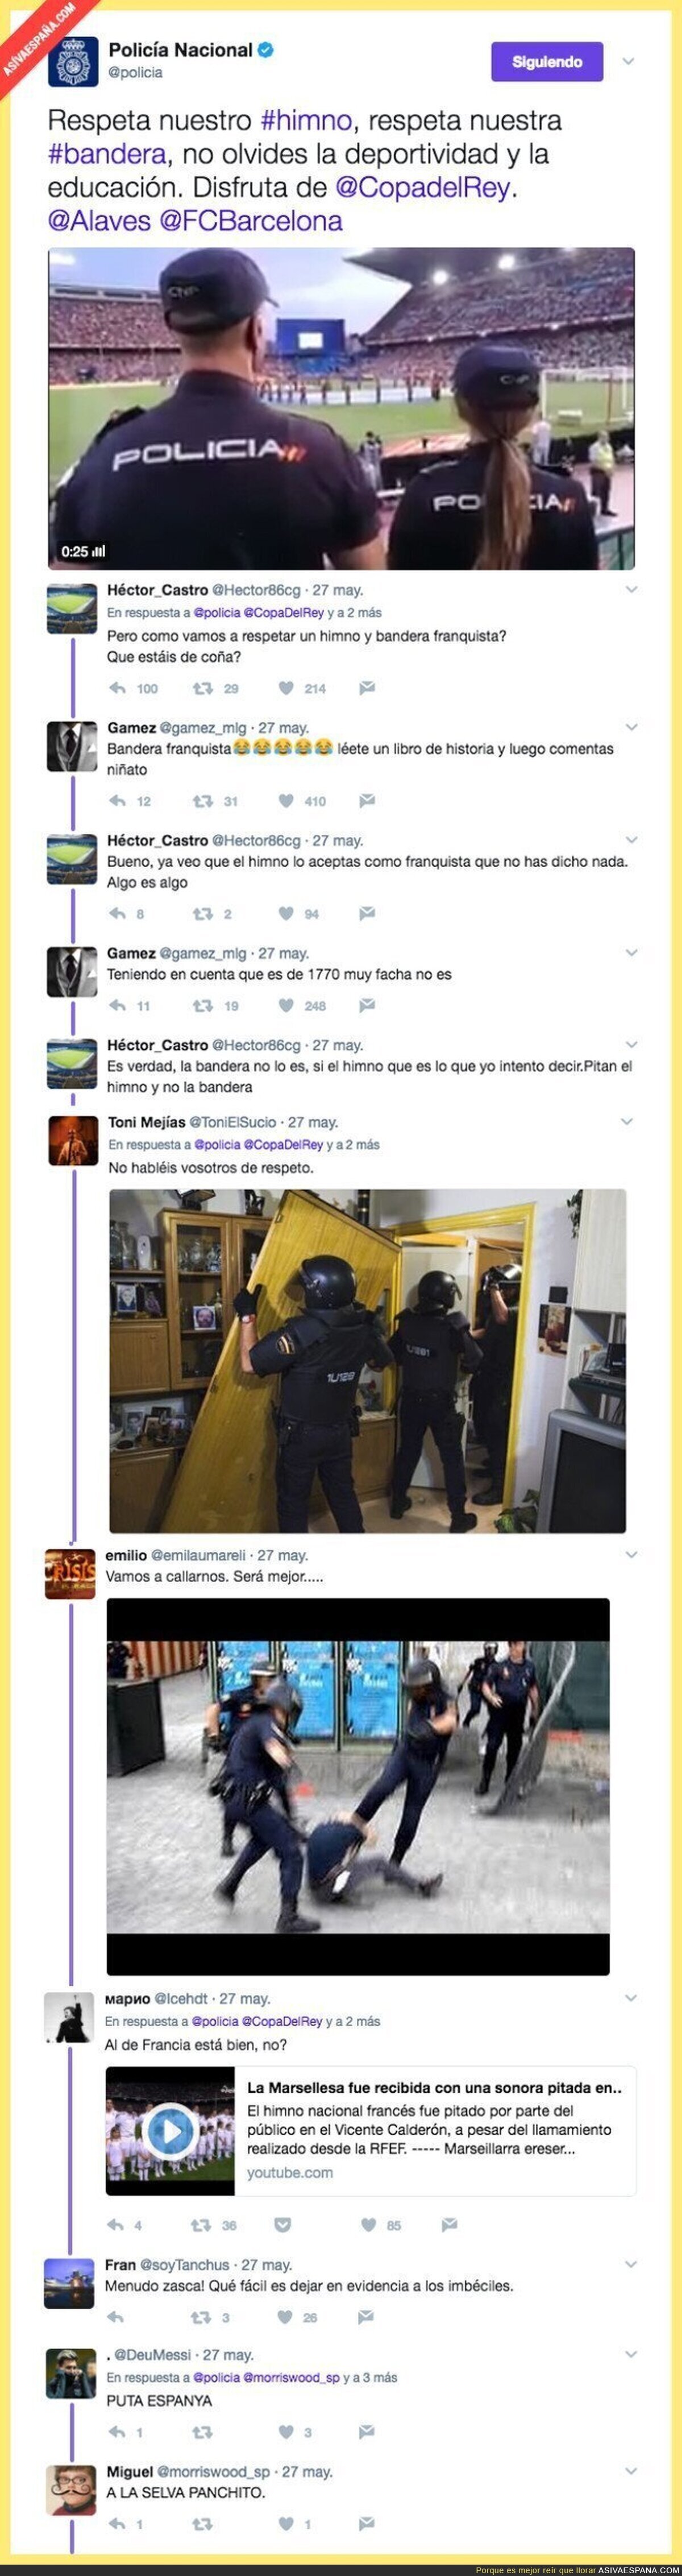 La policía la lía en Twitter con este mensaje durante la pitada al himno español